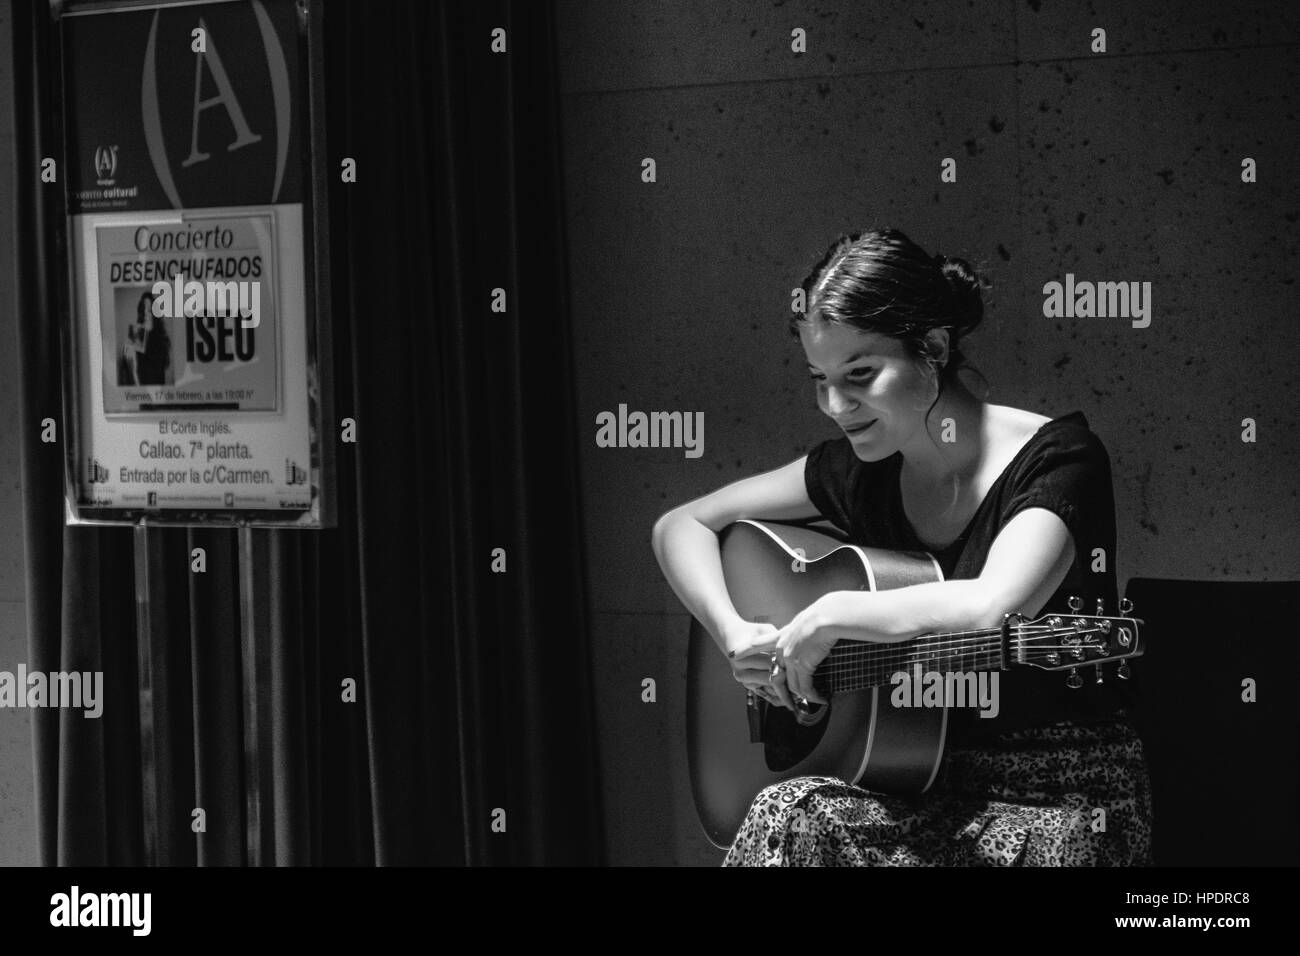 Konzert d ' ISEO - ein spanische Mädchen Album letzte Nacht in akustische Wiedergabe in Corte Ingles in Madrid - Spanien. Nur Gitarre. Stockfoto